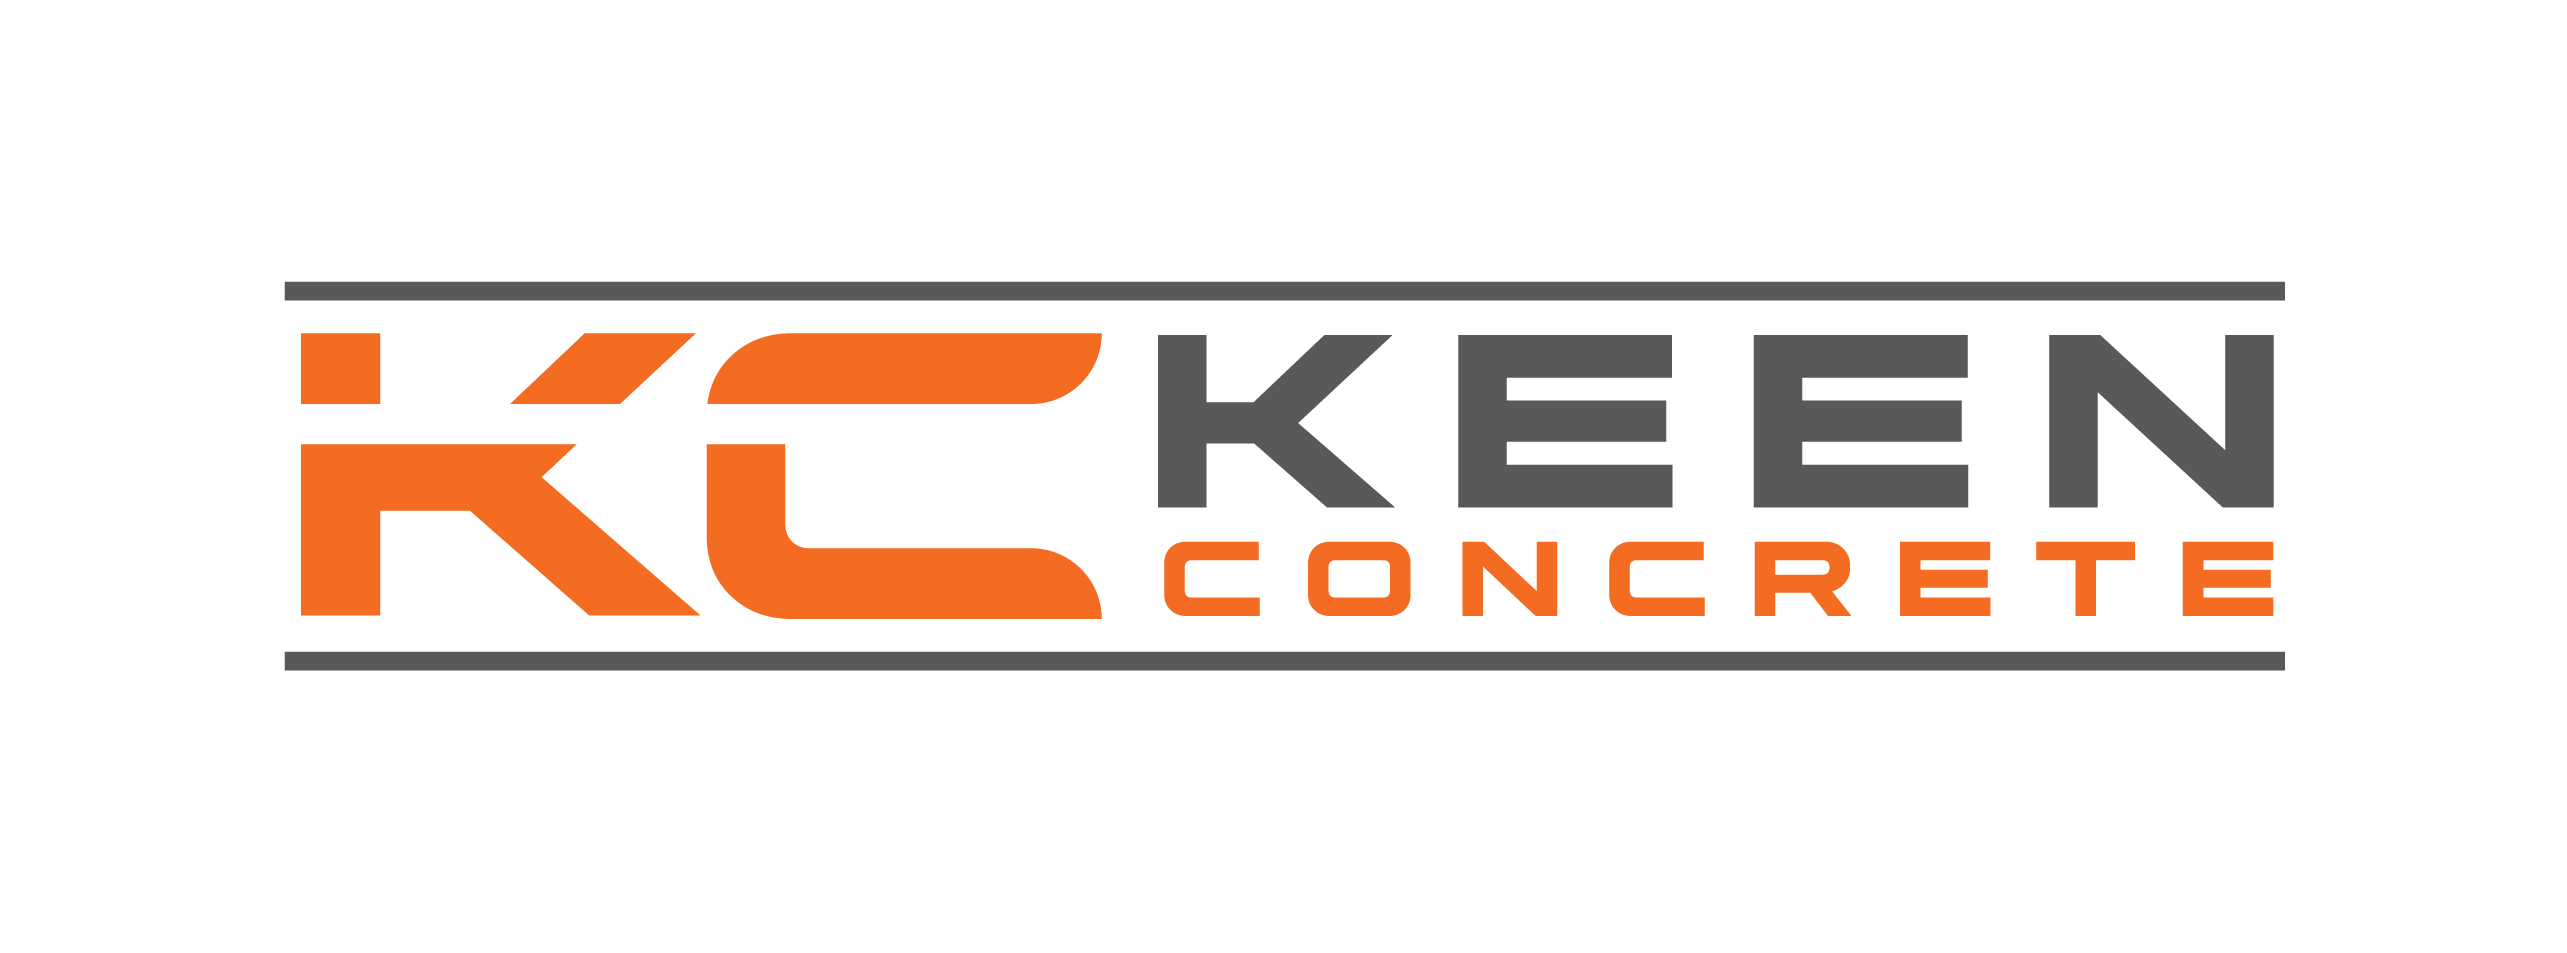 Keen Concrete Co